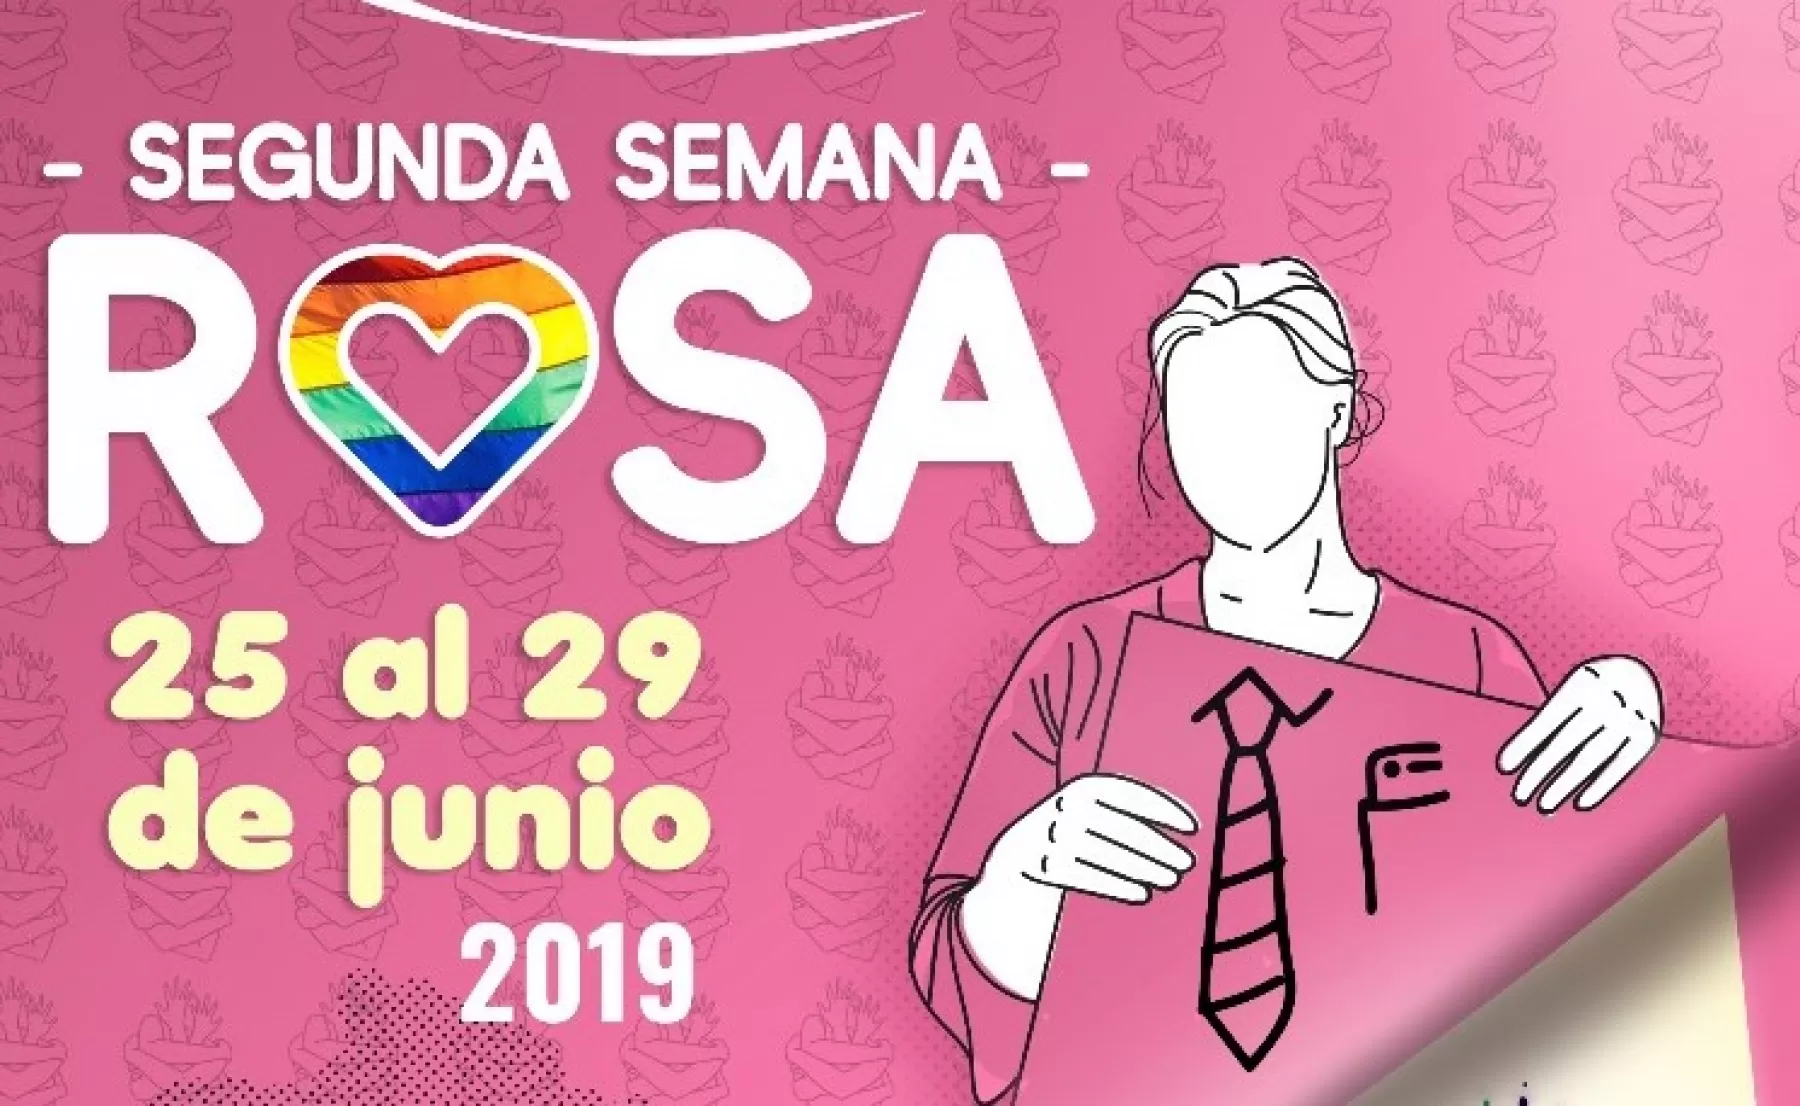 Del 25 al 29 de junio, se celebrará en Yopal la segunda Semana Rosa, con el lema Se Vale Ser Diferente.